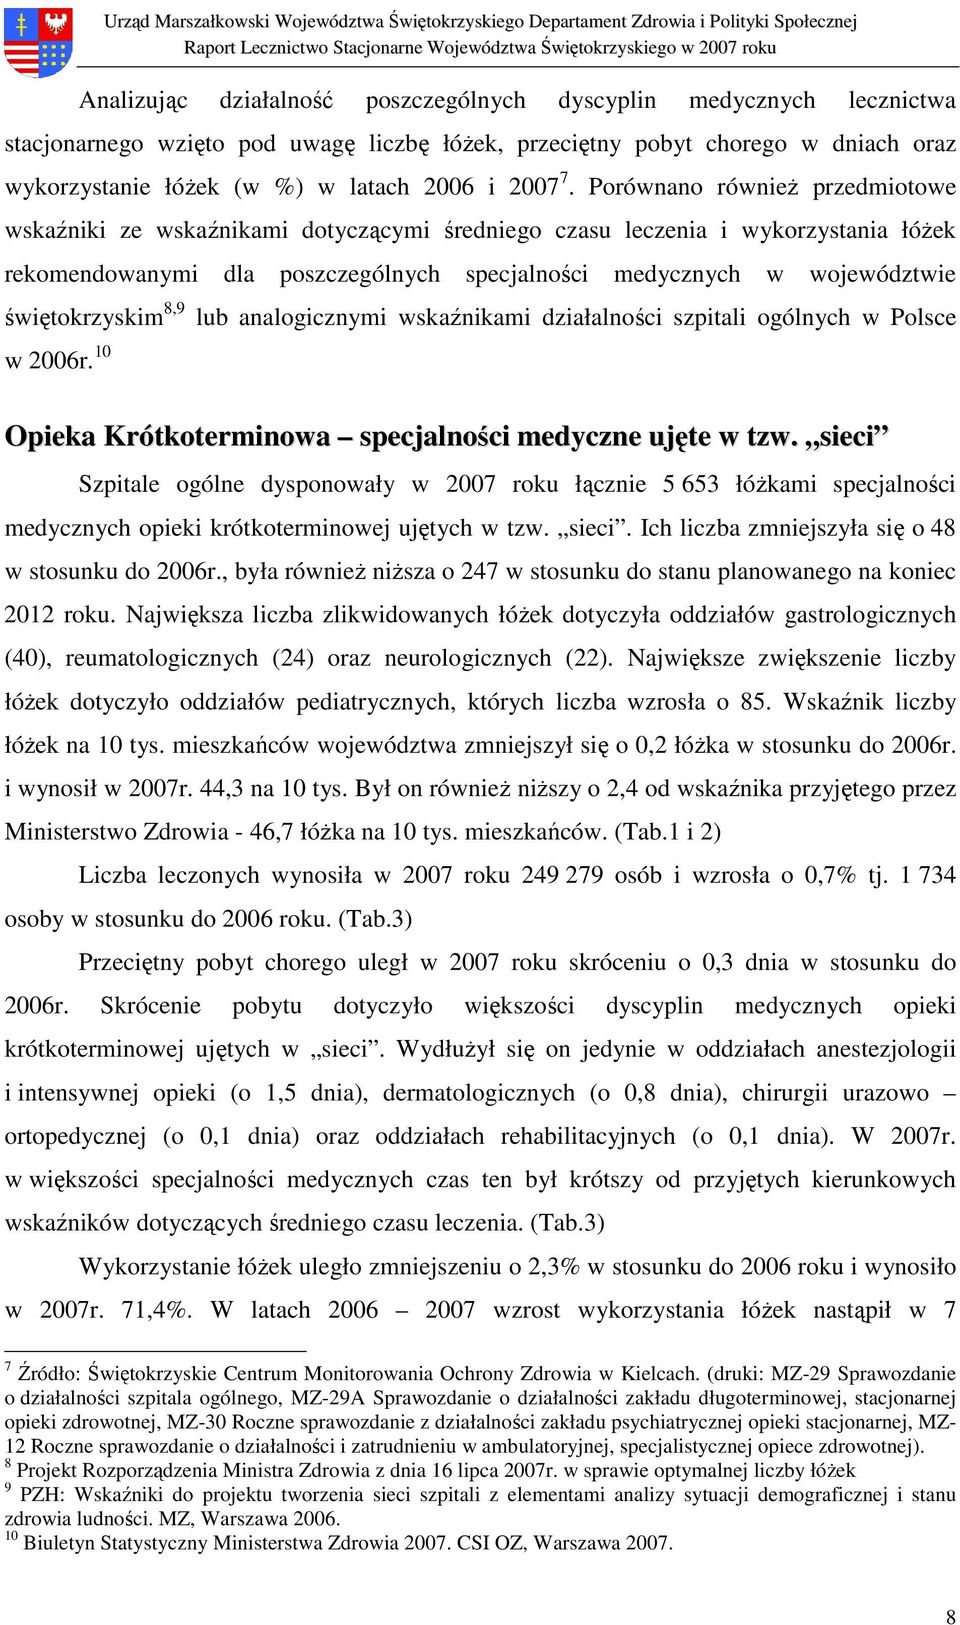 Porównano równieŝ przedmiotowe wskaźniki ze wskaźnikami dotyczącymi średniego czasu leczenia i wykorzystania łóŝek rekomendowanymi dla poszczególnych specjalności medycznych w województwie